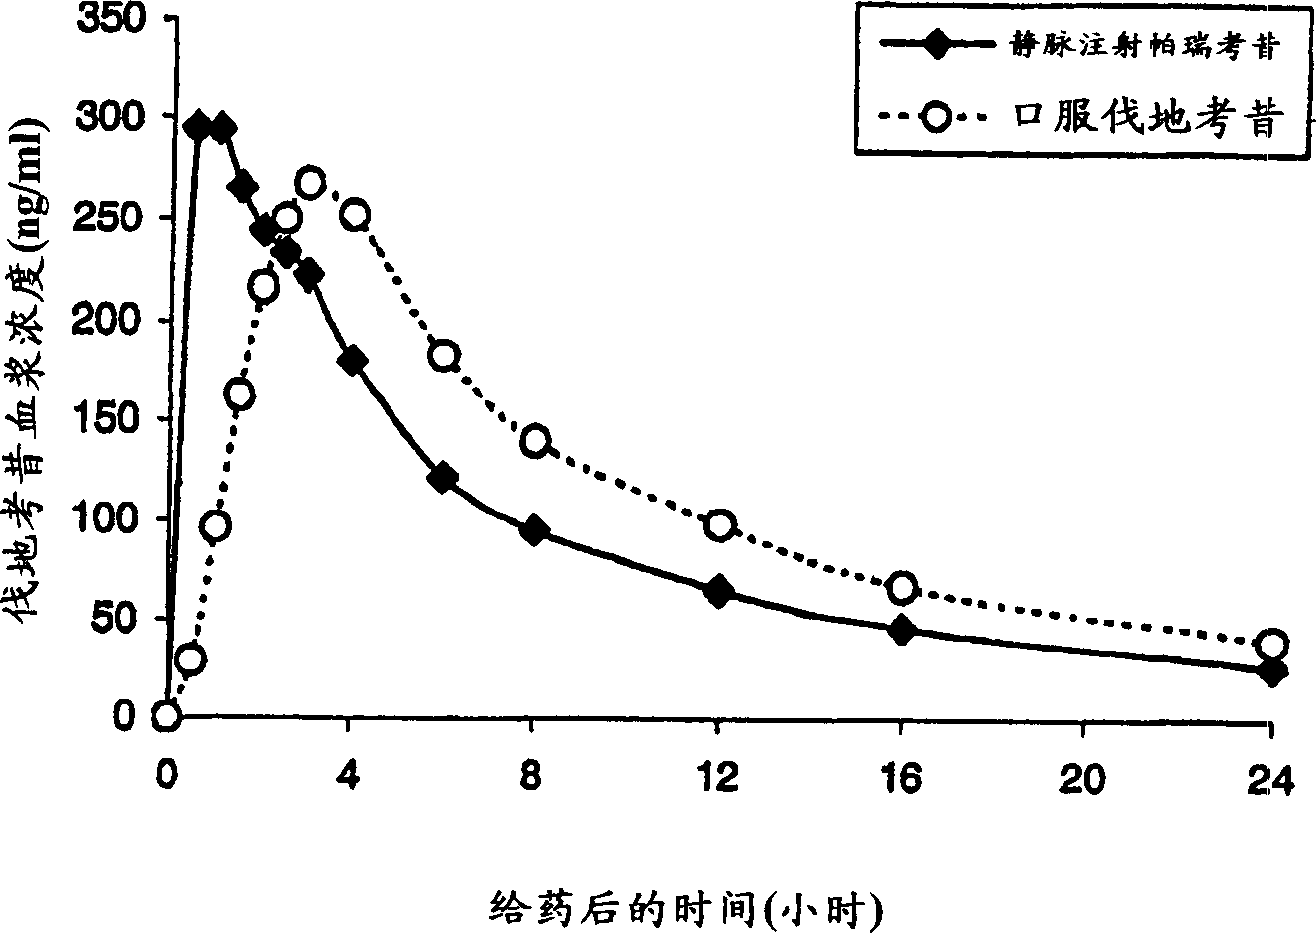 Reconstitutable parenteral composition containing COX-2 inhibitor